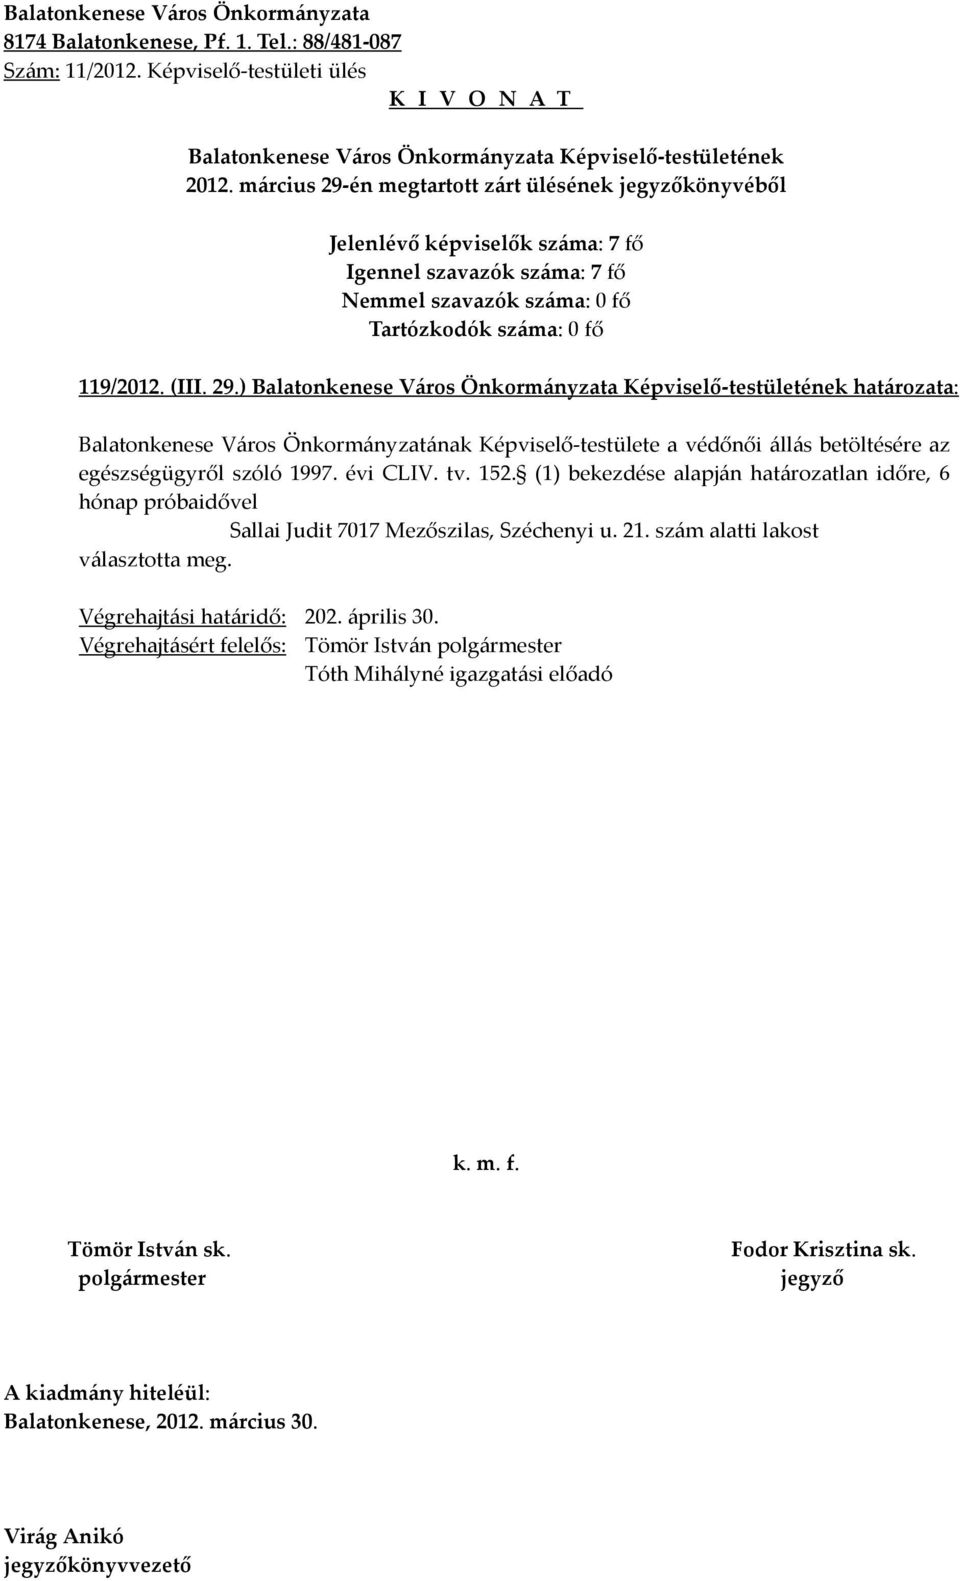 ) határozata: Balatonkenese Város Önkormányzatának Képviselő-testülete a védőnői állás betöltésére az egészségügyről